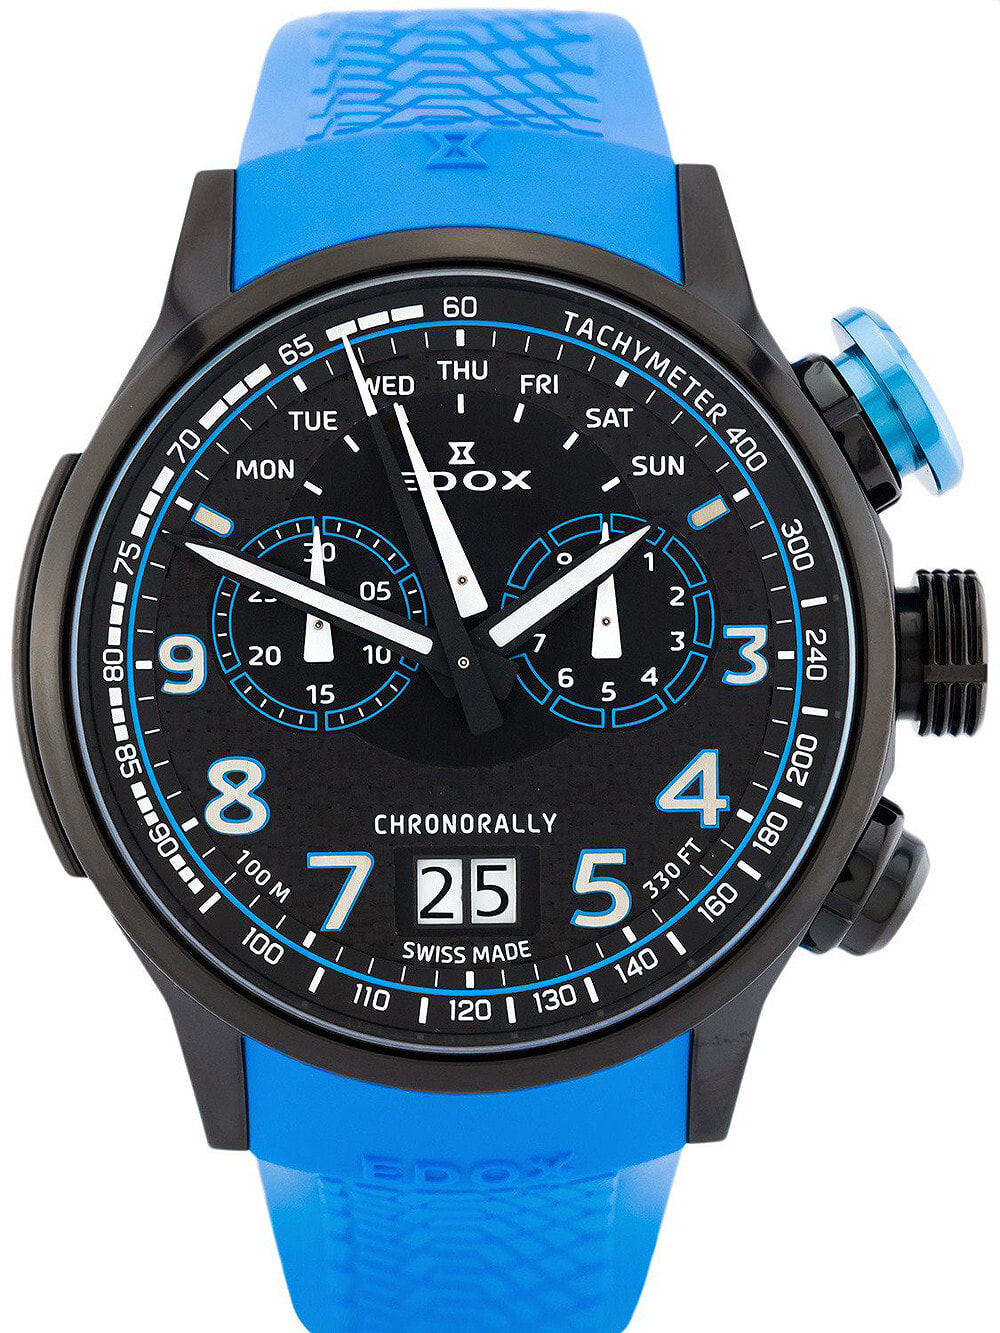 Мужские наручные часы с синим силиконовым ремешком Edox 38001-TINNBU3-NIBU3 Chronorally chronograph 48mm 10ATM